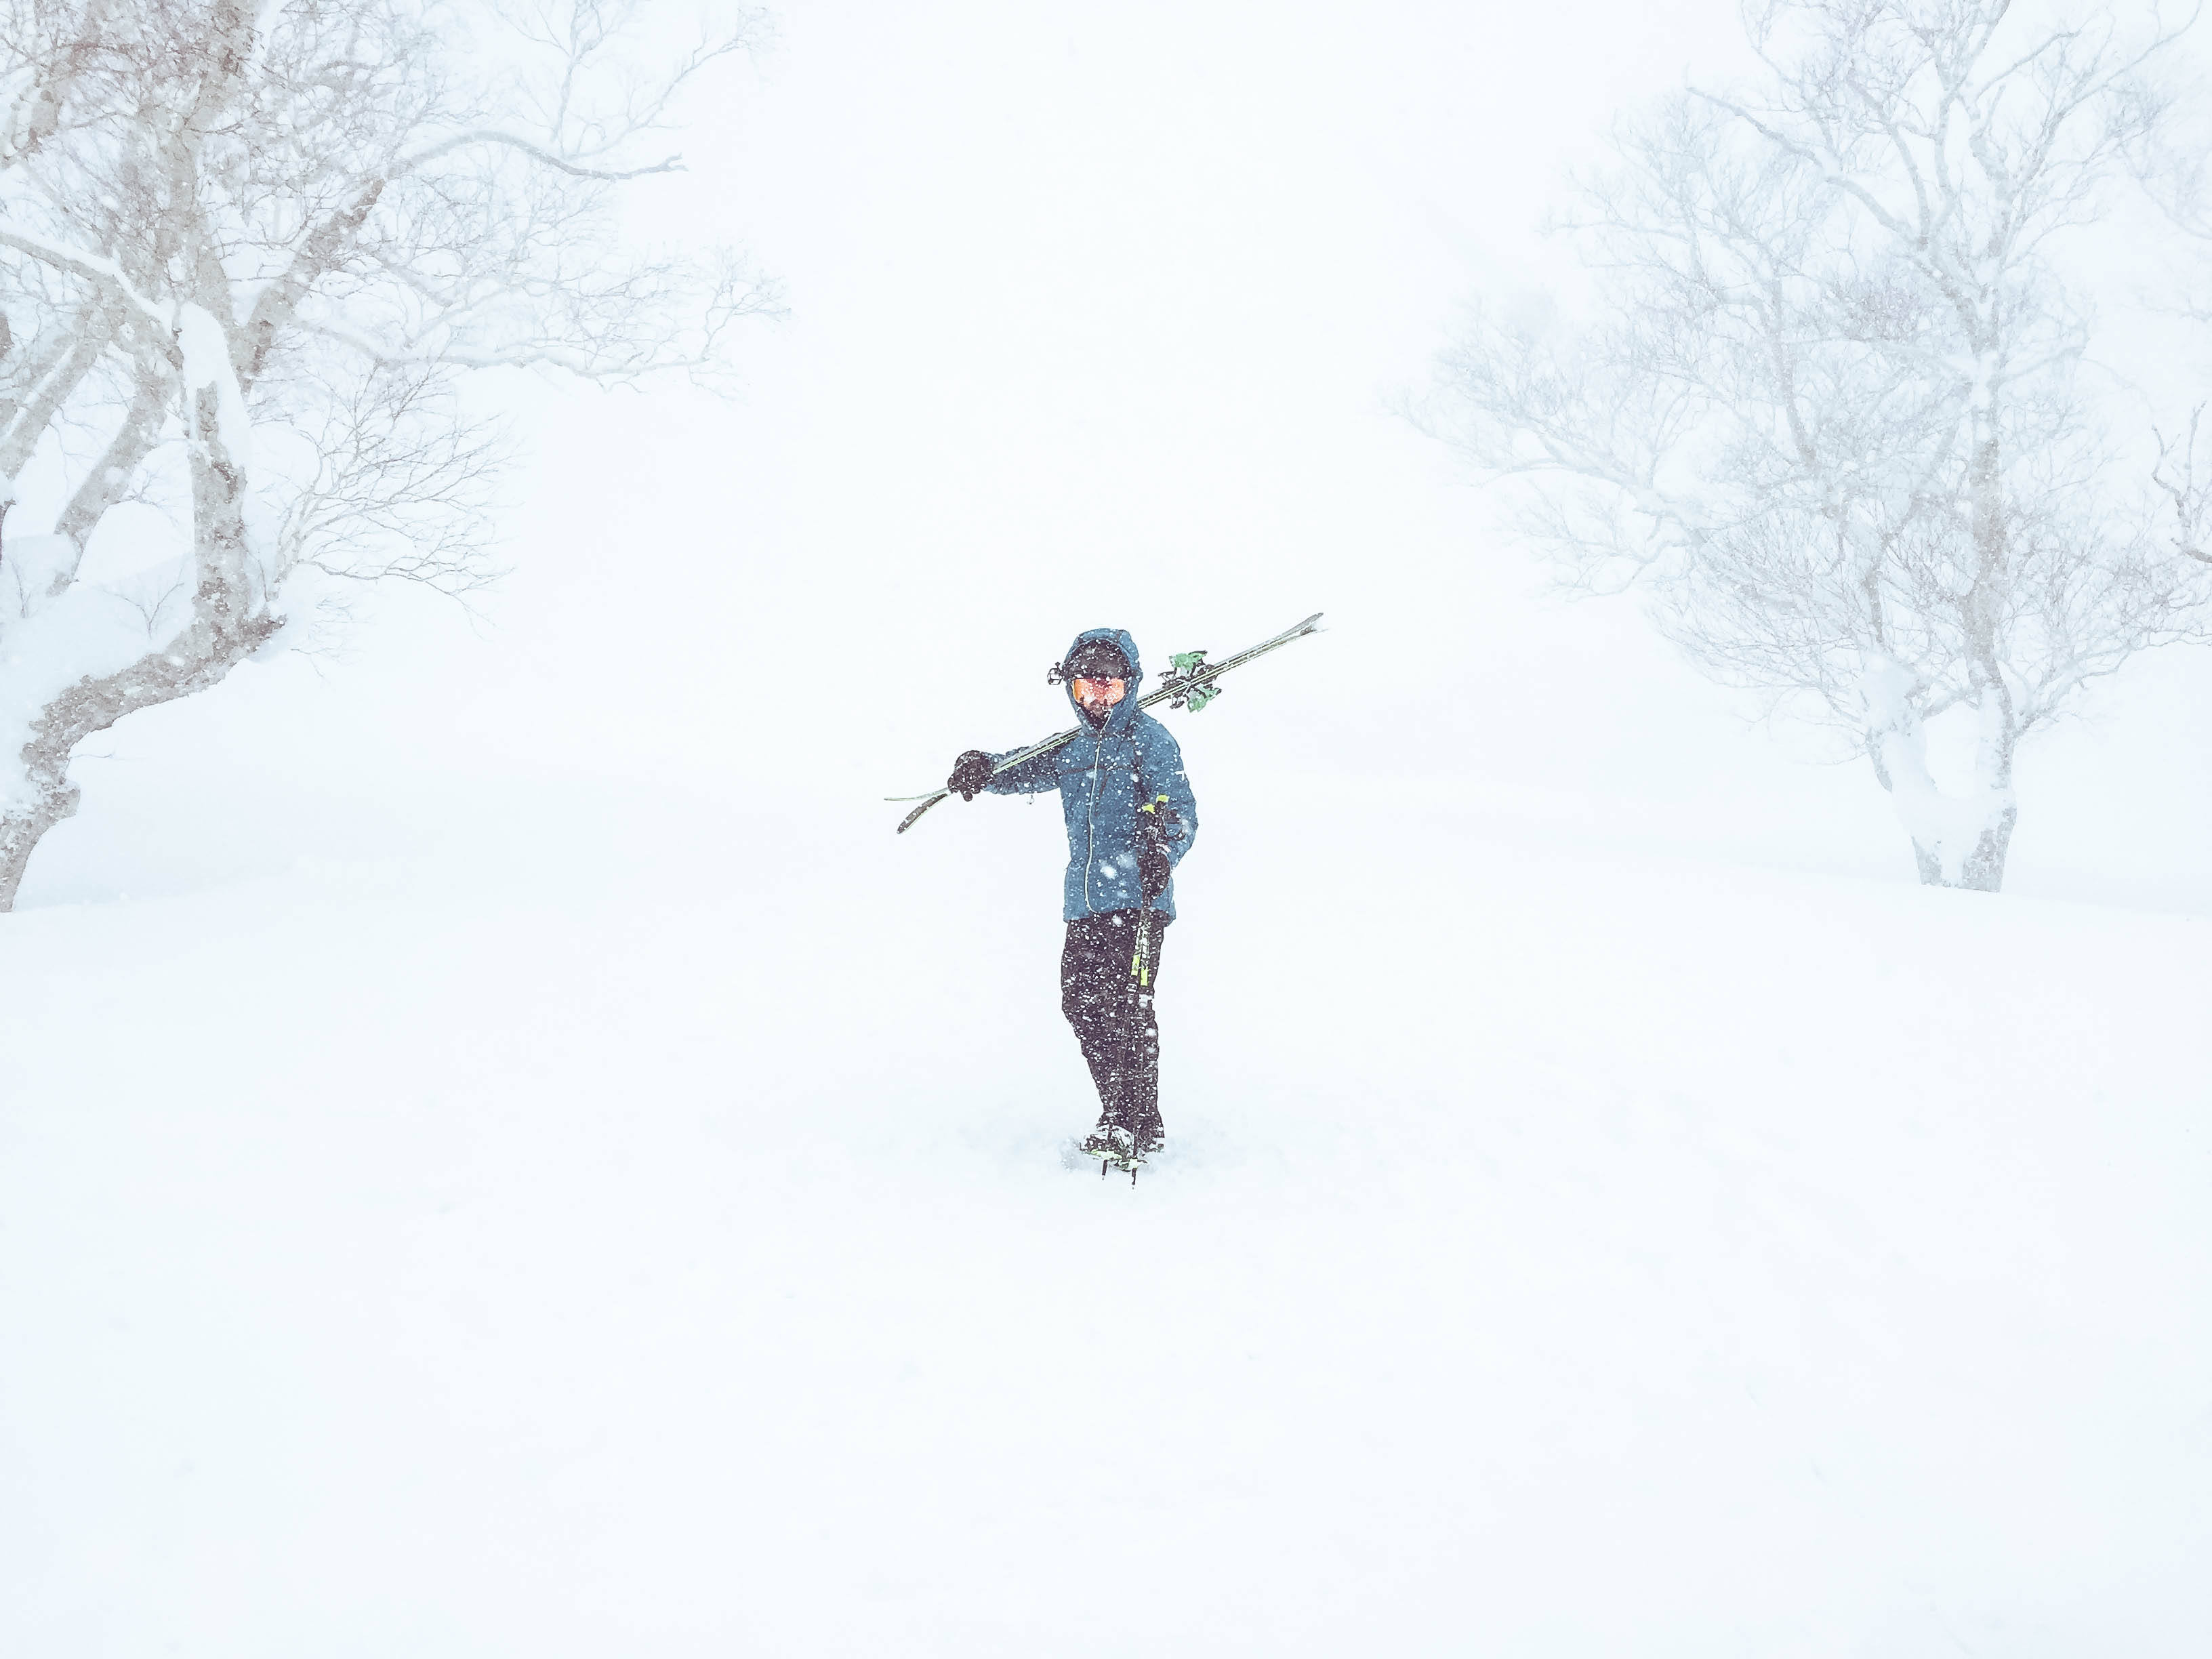 Niseko - Powder Skiing Japan